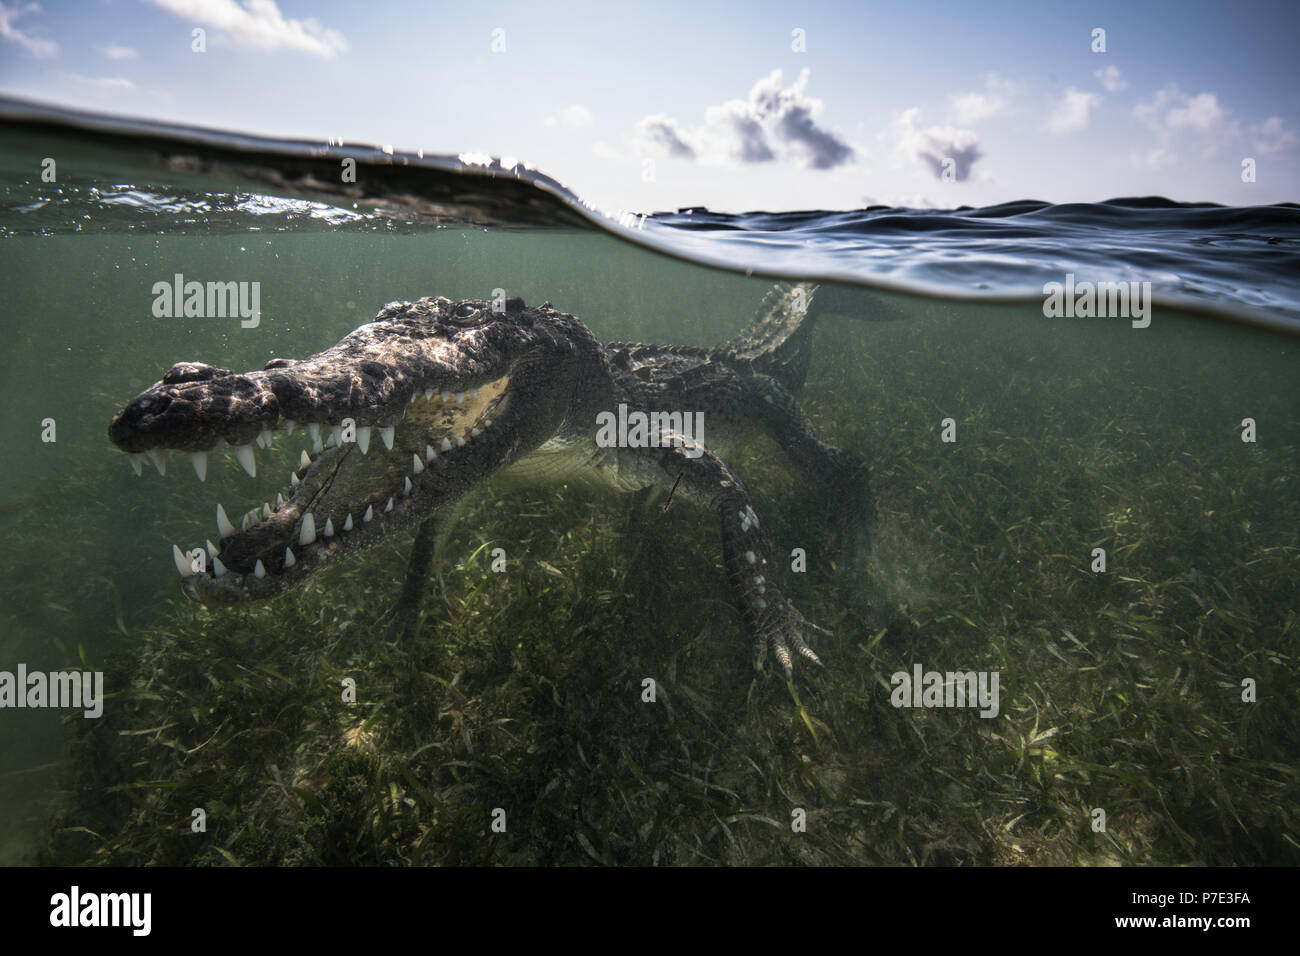 El Cocodrilo Americano (Crocodylus acutus) en bajíos mostrando los dientes, Bancos Chinchorro, Xcalak, Quintana Roo, México. Foto de stock